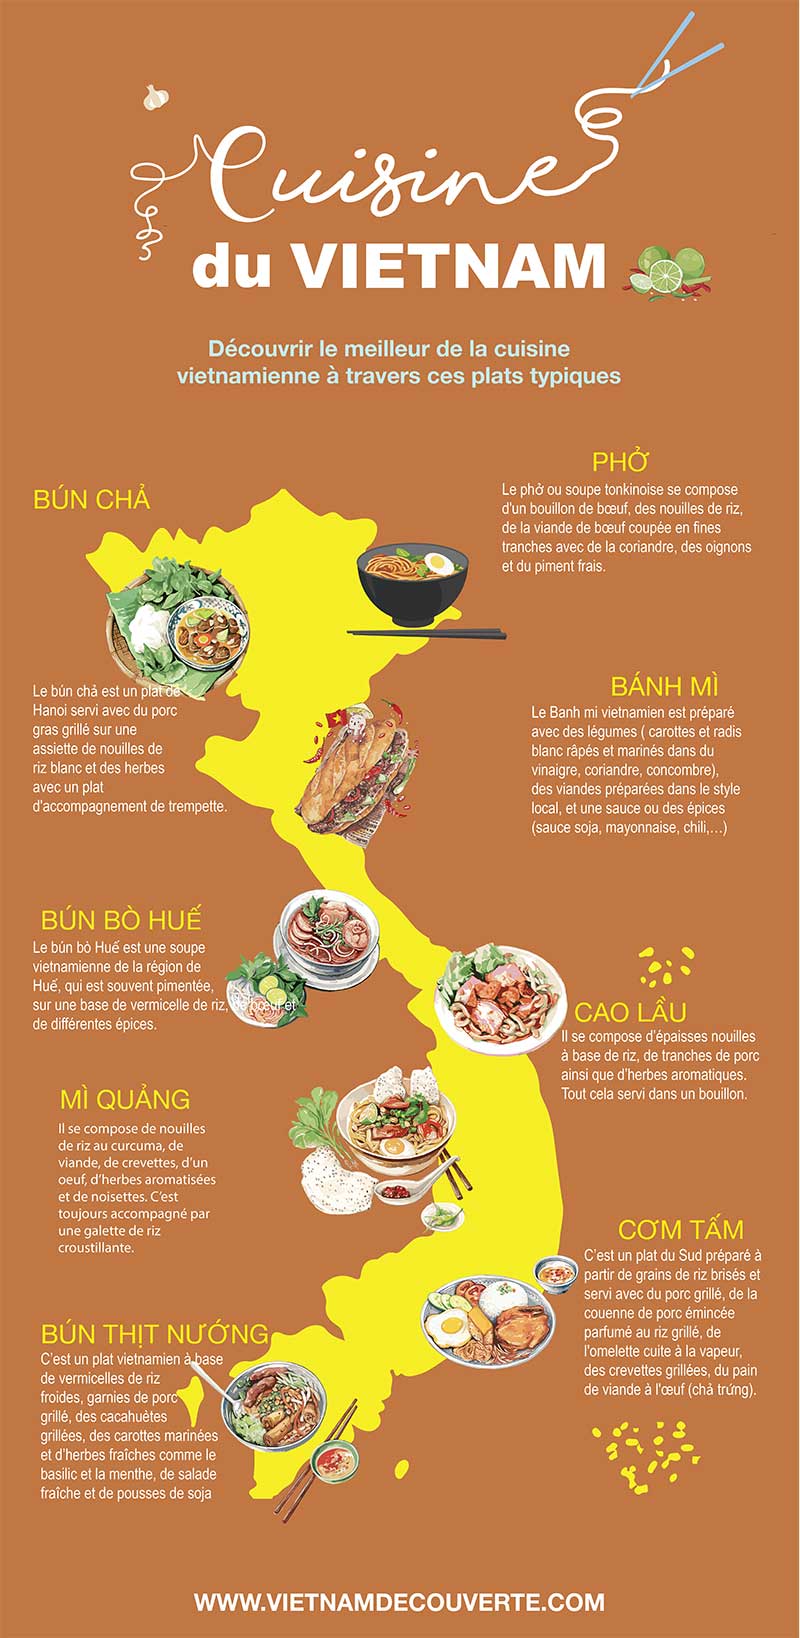 Cuisine du Vietnam infographie